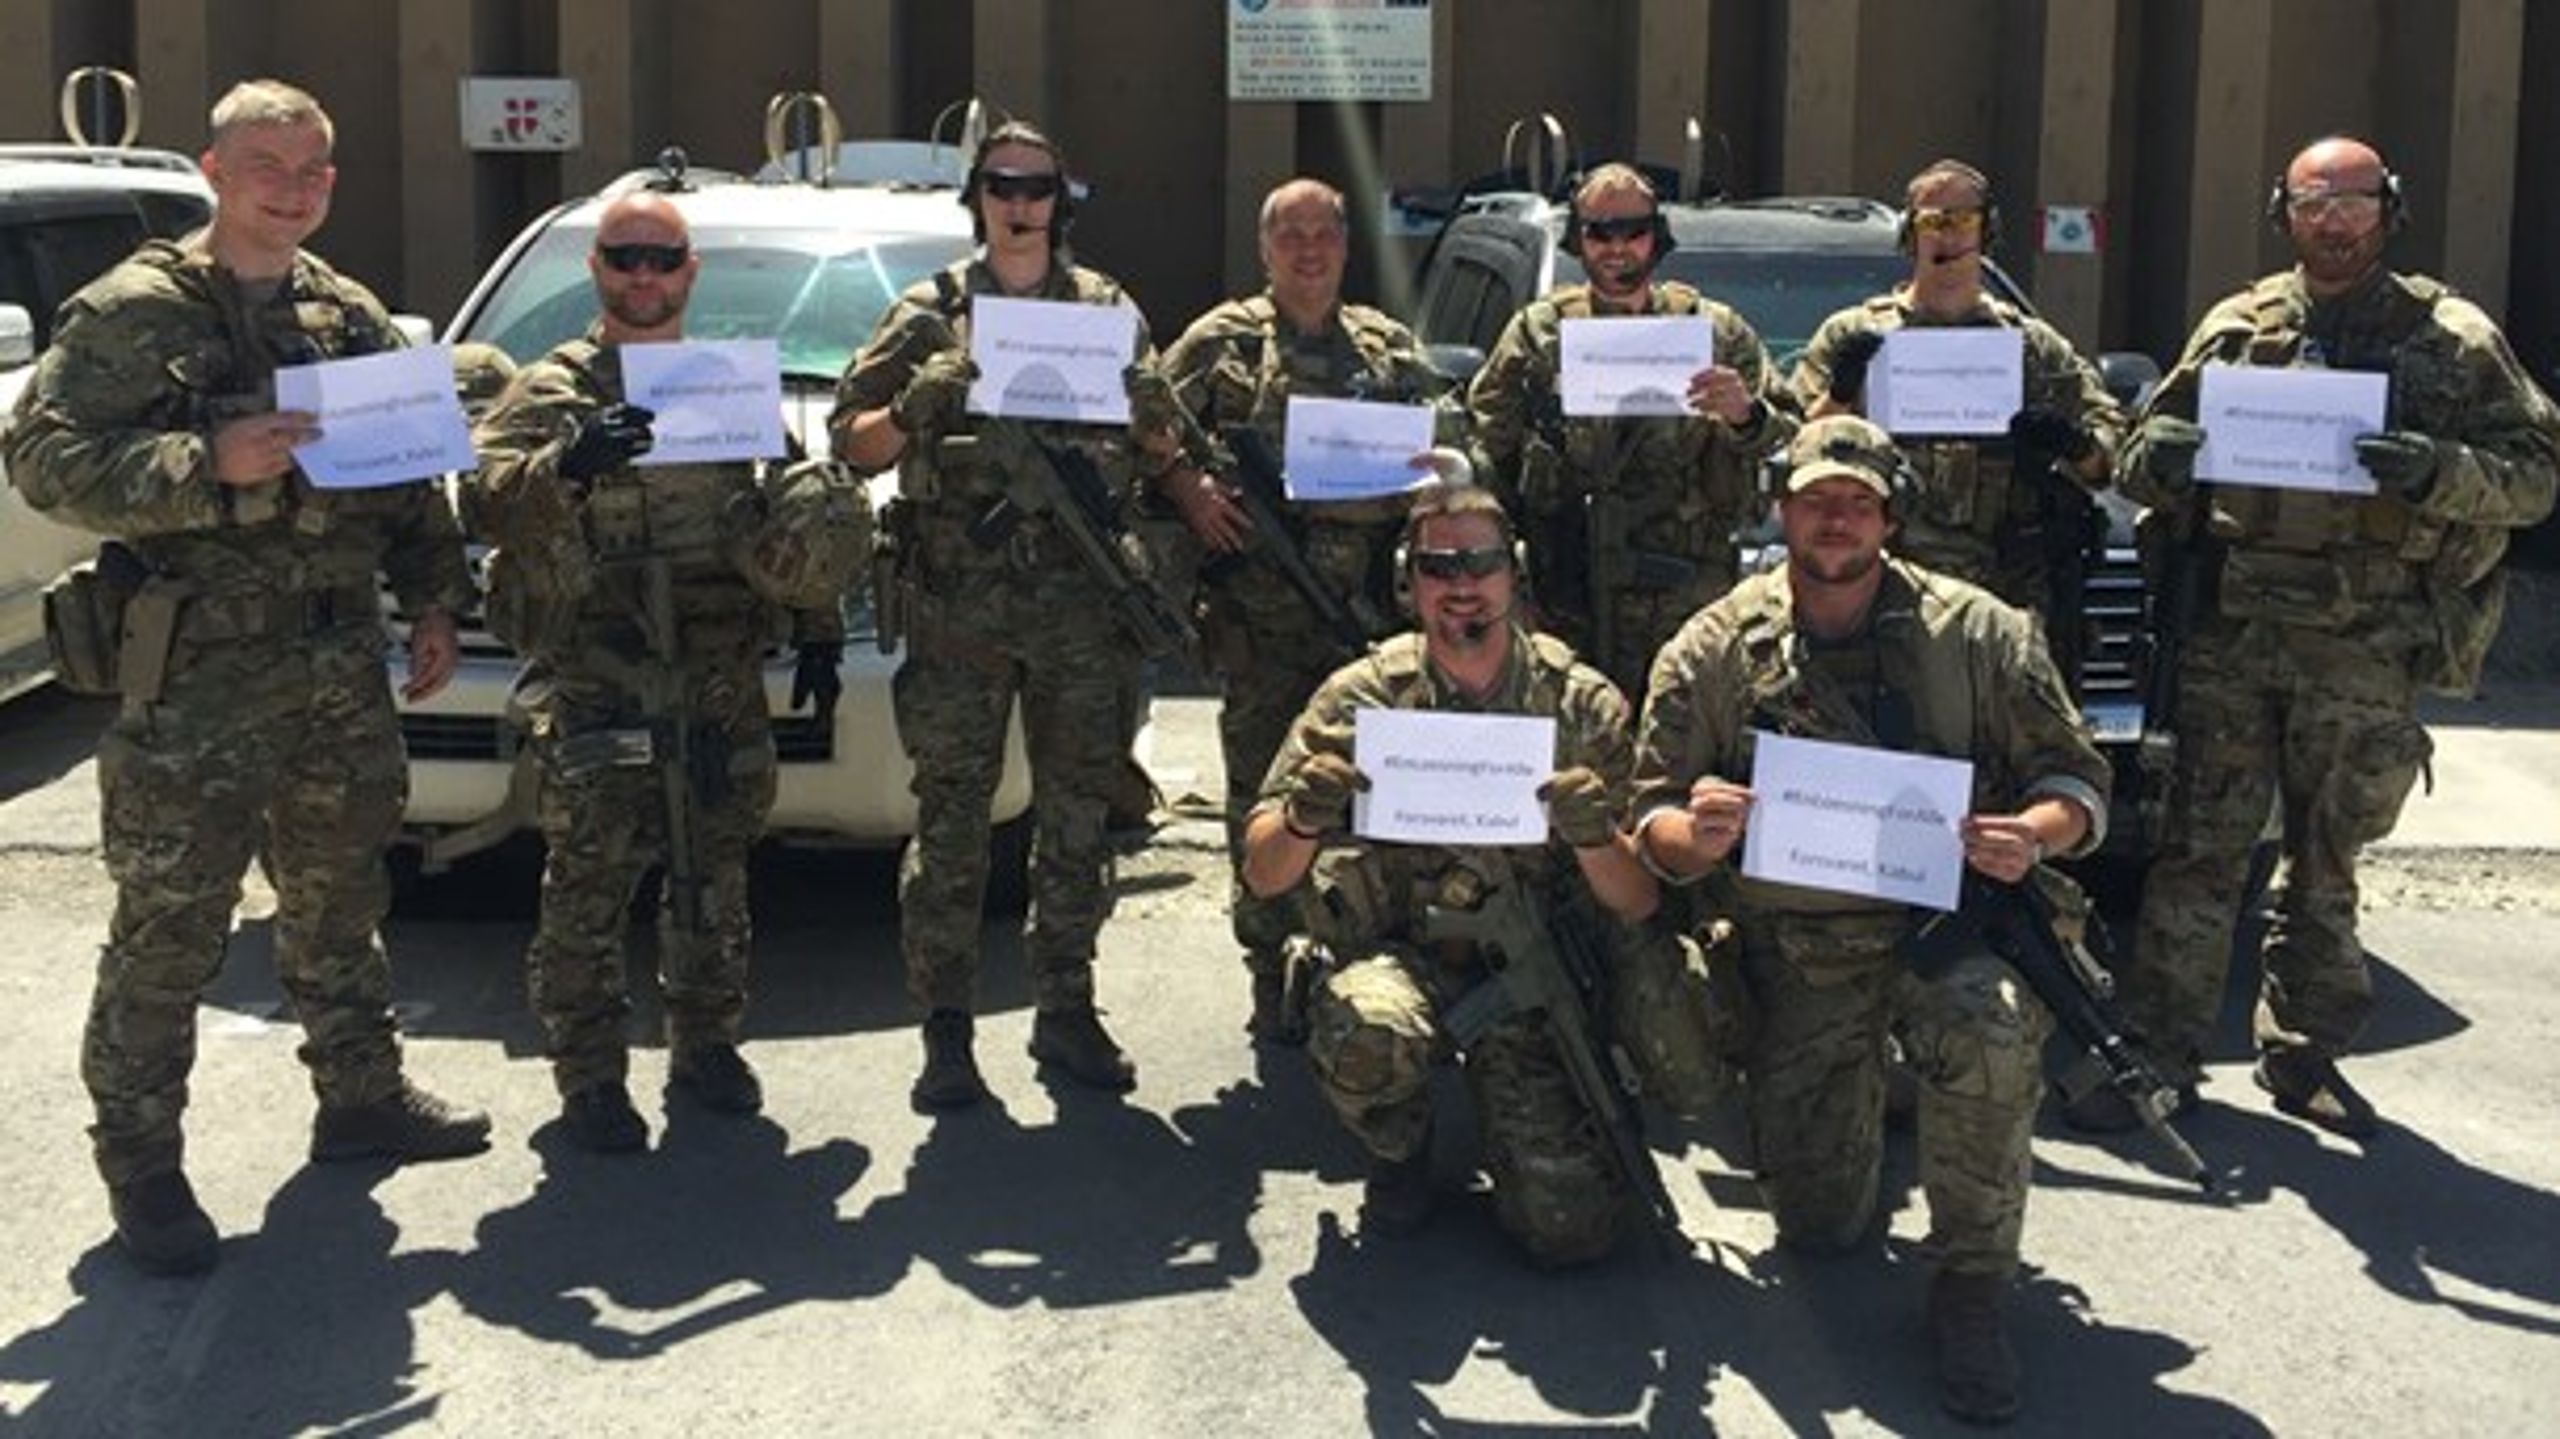 De udsendte soldater i Kabul viser deres engagement i forbindelse med OK18. På deres skilte står: "En løsning for alle".